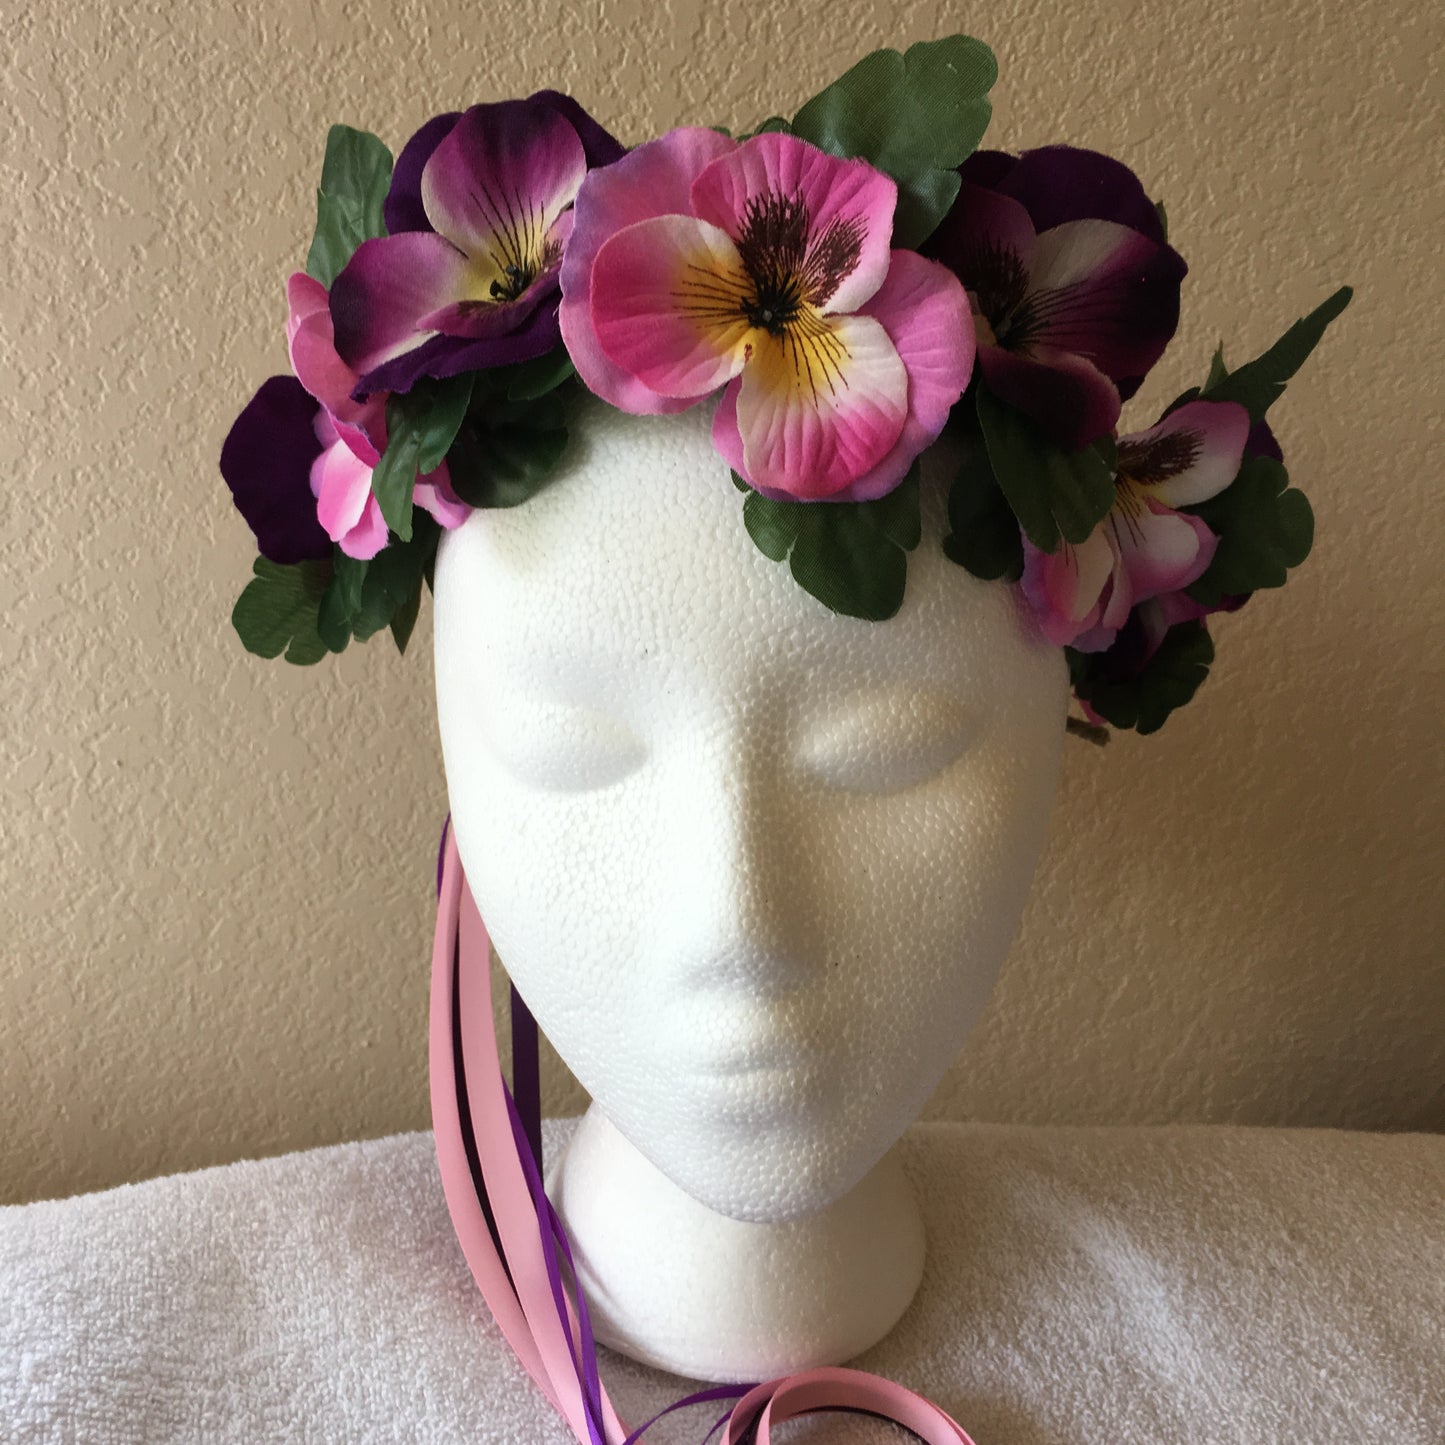 Medium Wreath - Pink & purple pansies